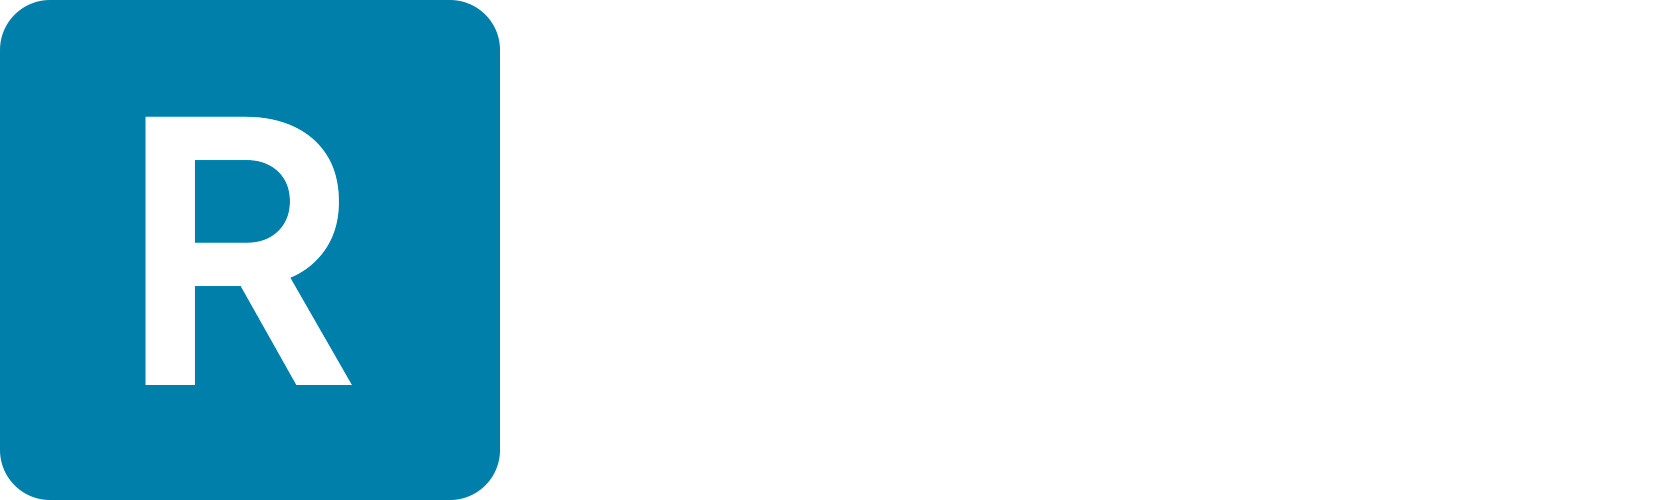 Rytmeworkshop logo